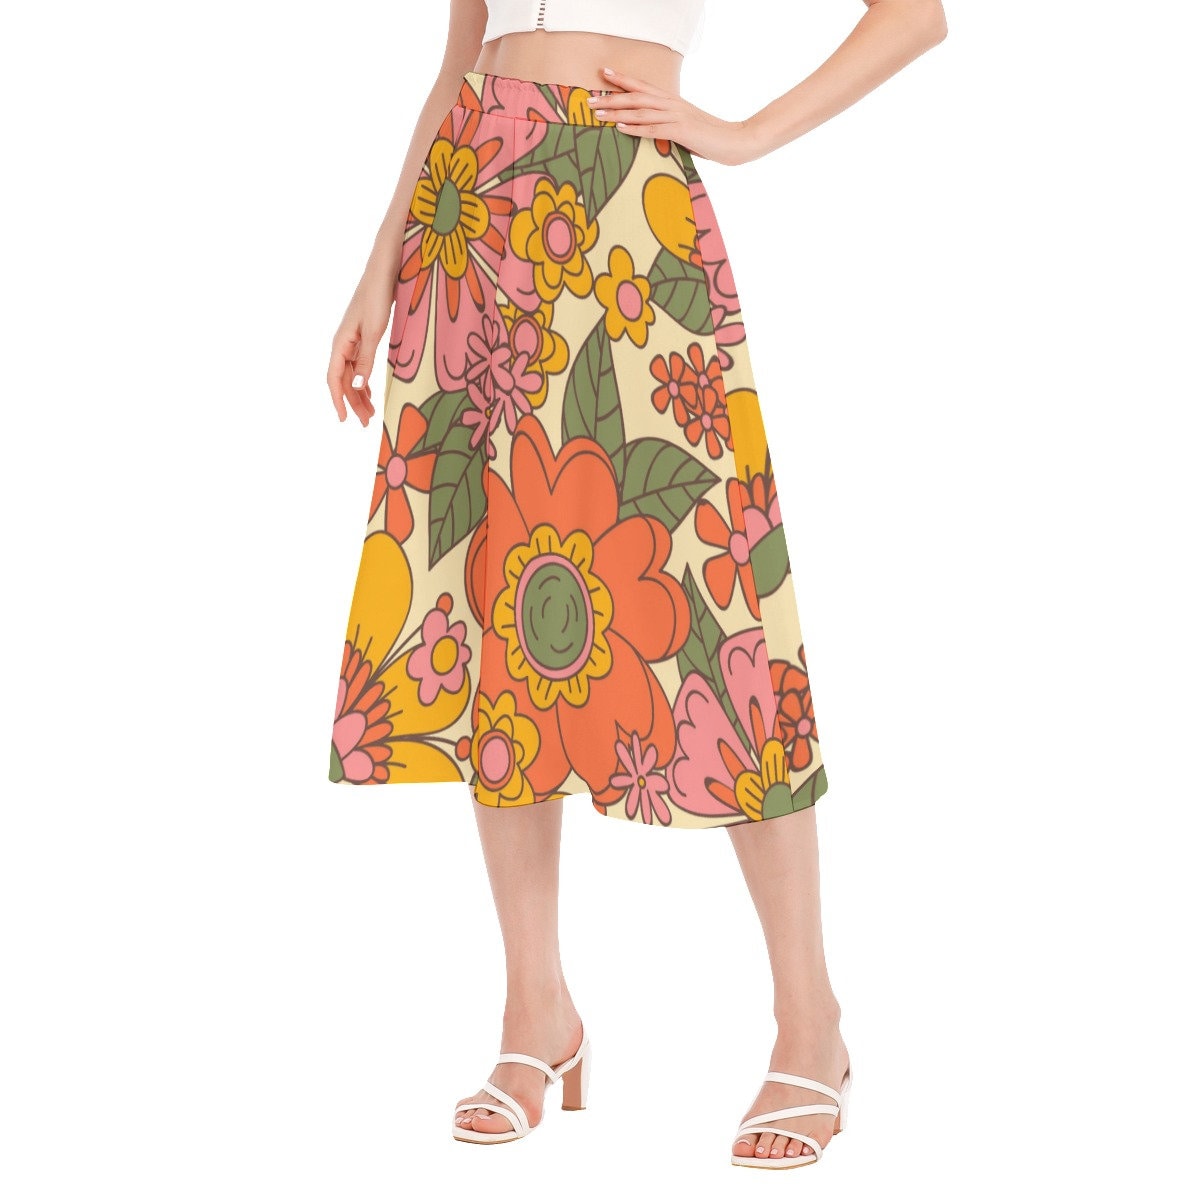 Vintage Style Skirt, Midi Skirt Women, Floral Skirt, Floral Midi Skirt, 60s 70s style skirt, Aline Skirt Women